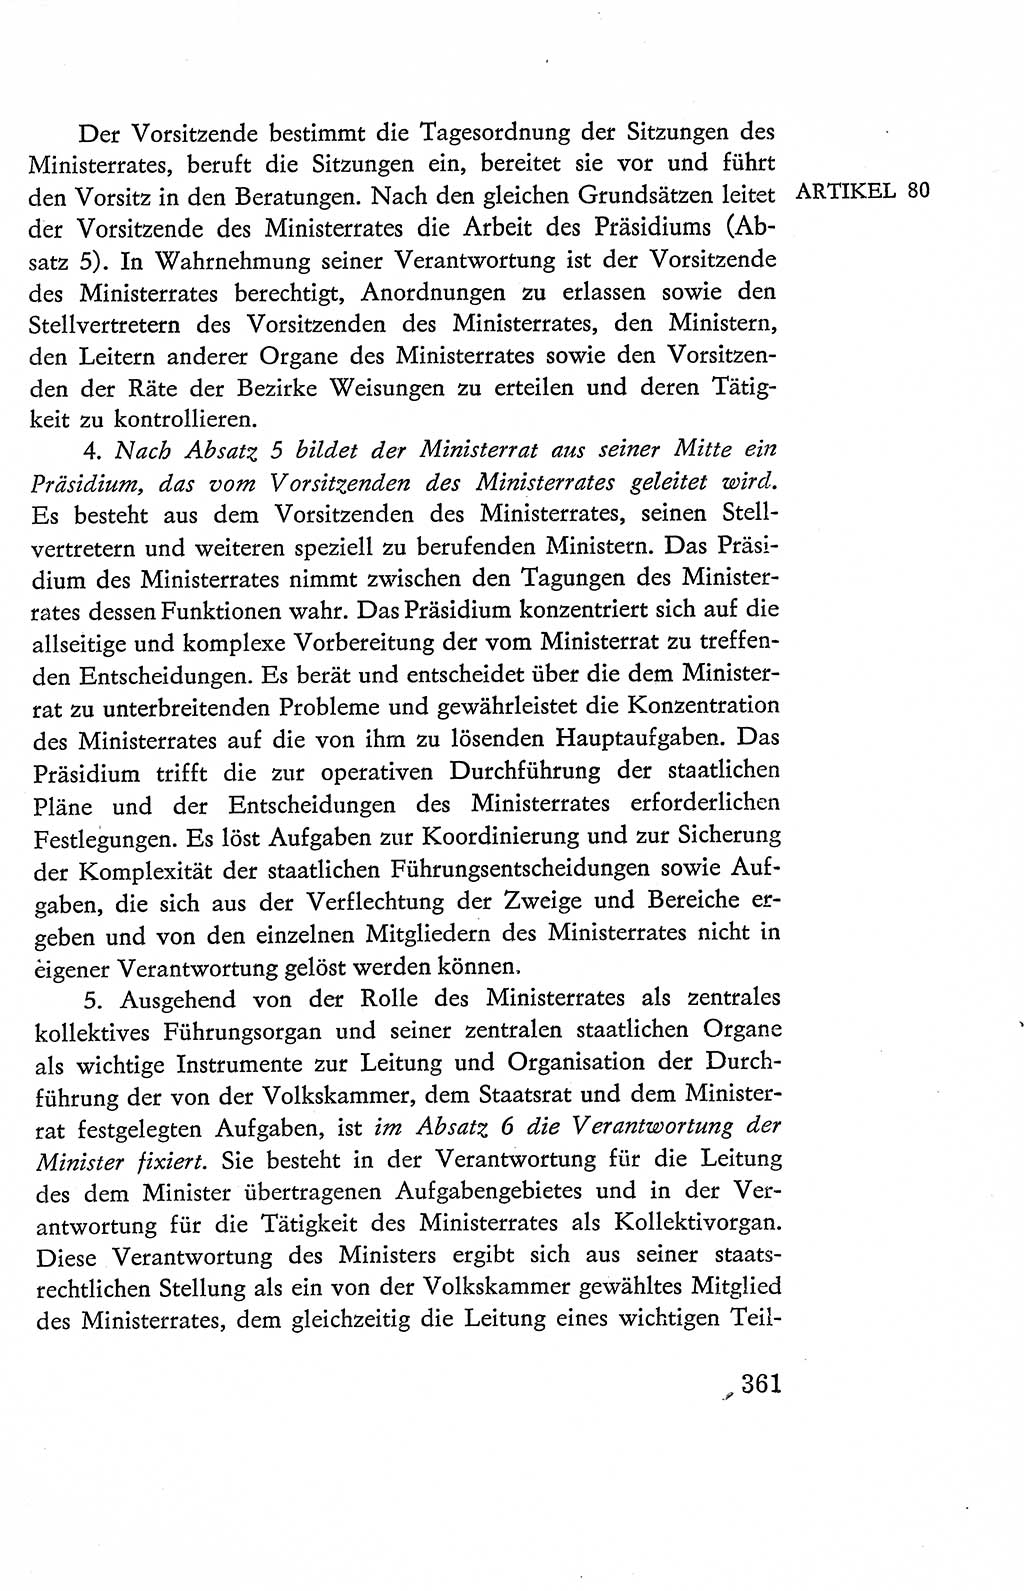 Verfassung der Deutschen Demokratischen Republik (DDR), Dokumente, Kommentar 1969, Band 2, Seite 361 (Verf. DDR Dok. Komm. 1969, Bd. 2, S. 361)